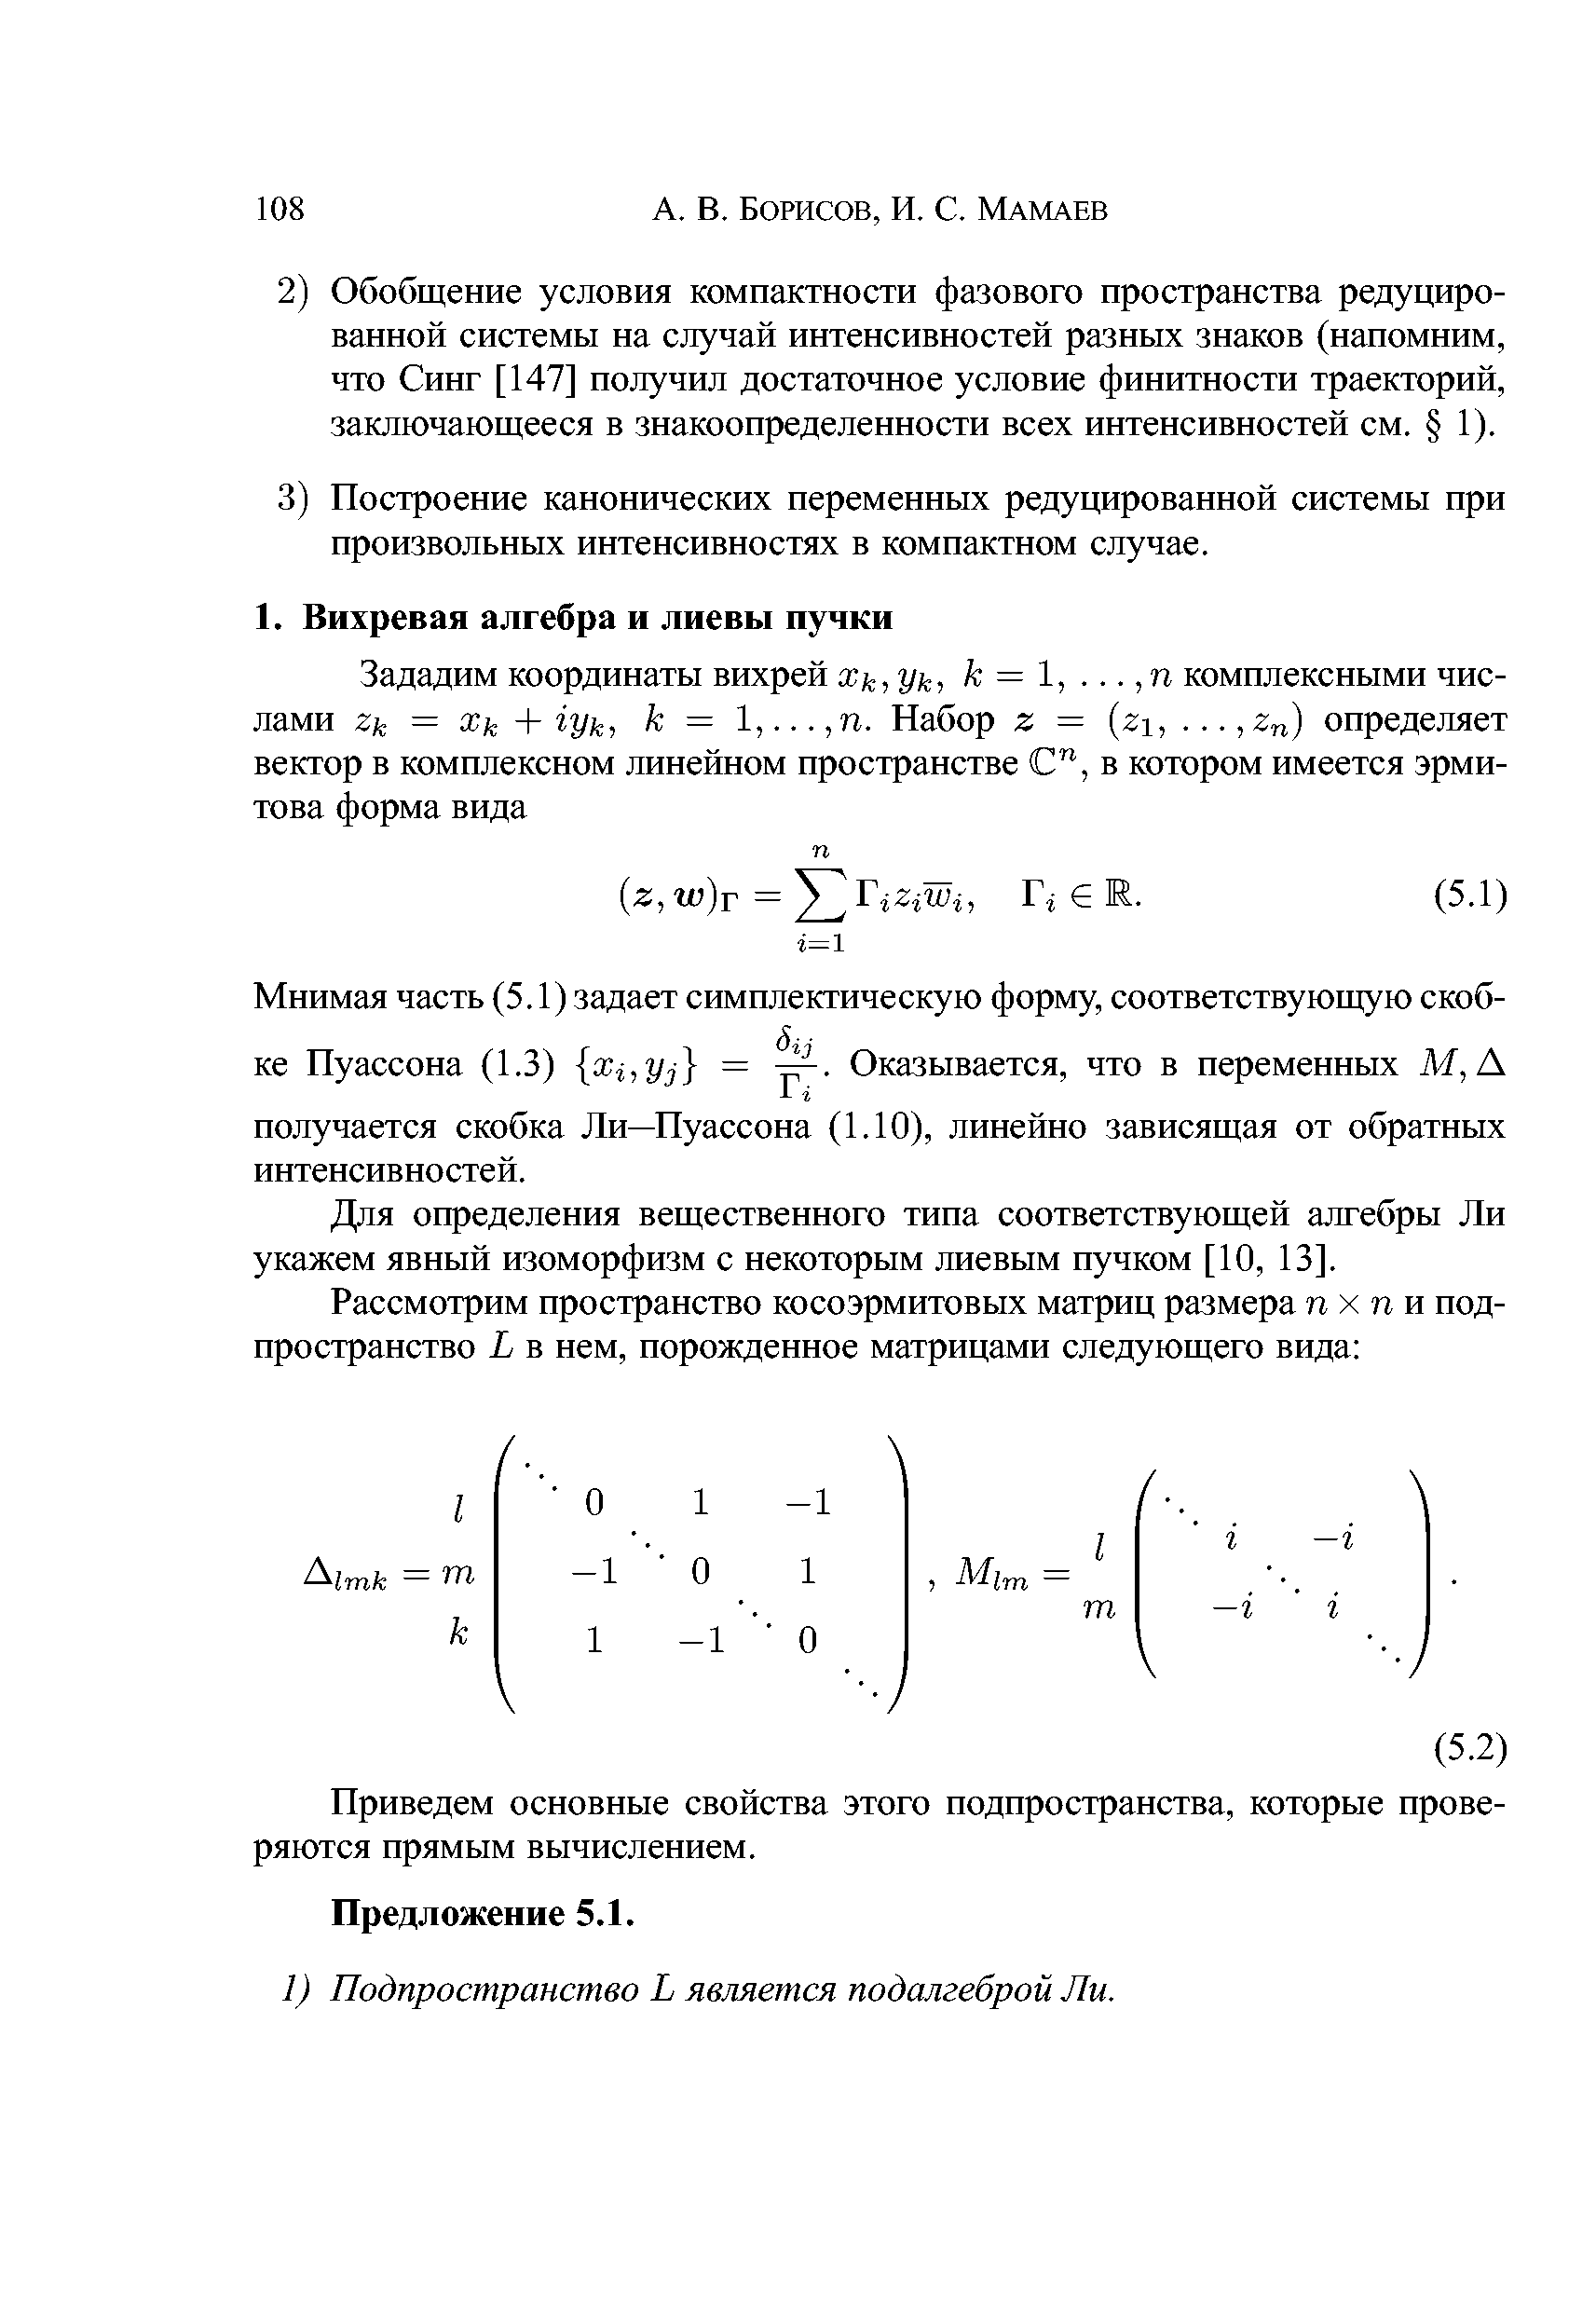 Для определения вещественного типа соответствующей алгебры Ли укажем явный изоморфизм с некоторым лиевым пучком [10, 13].
